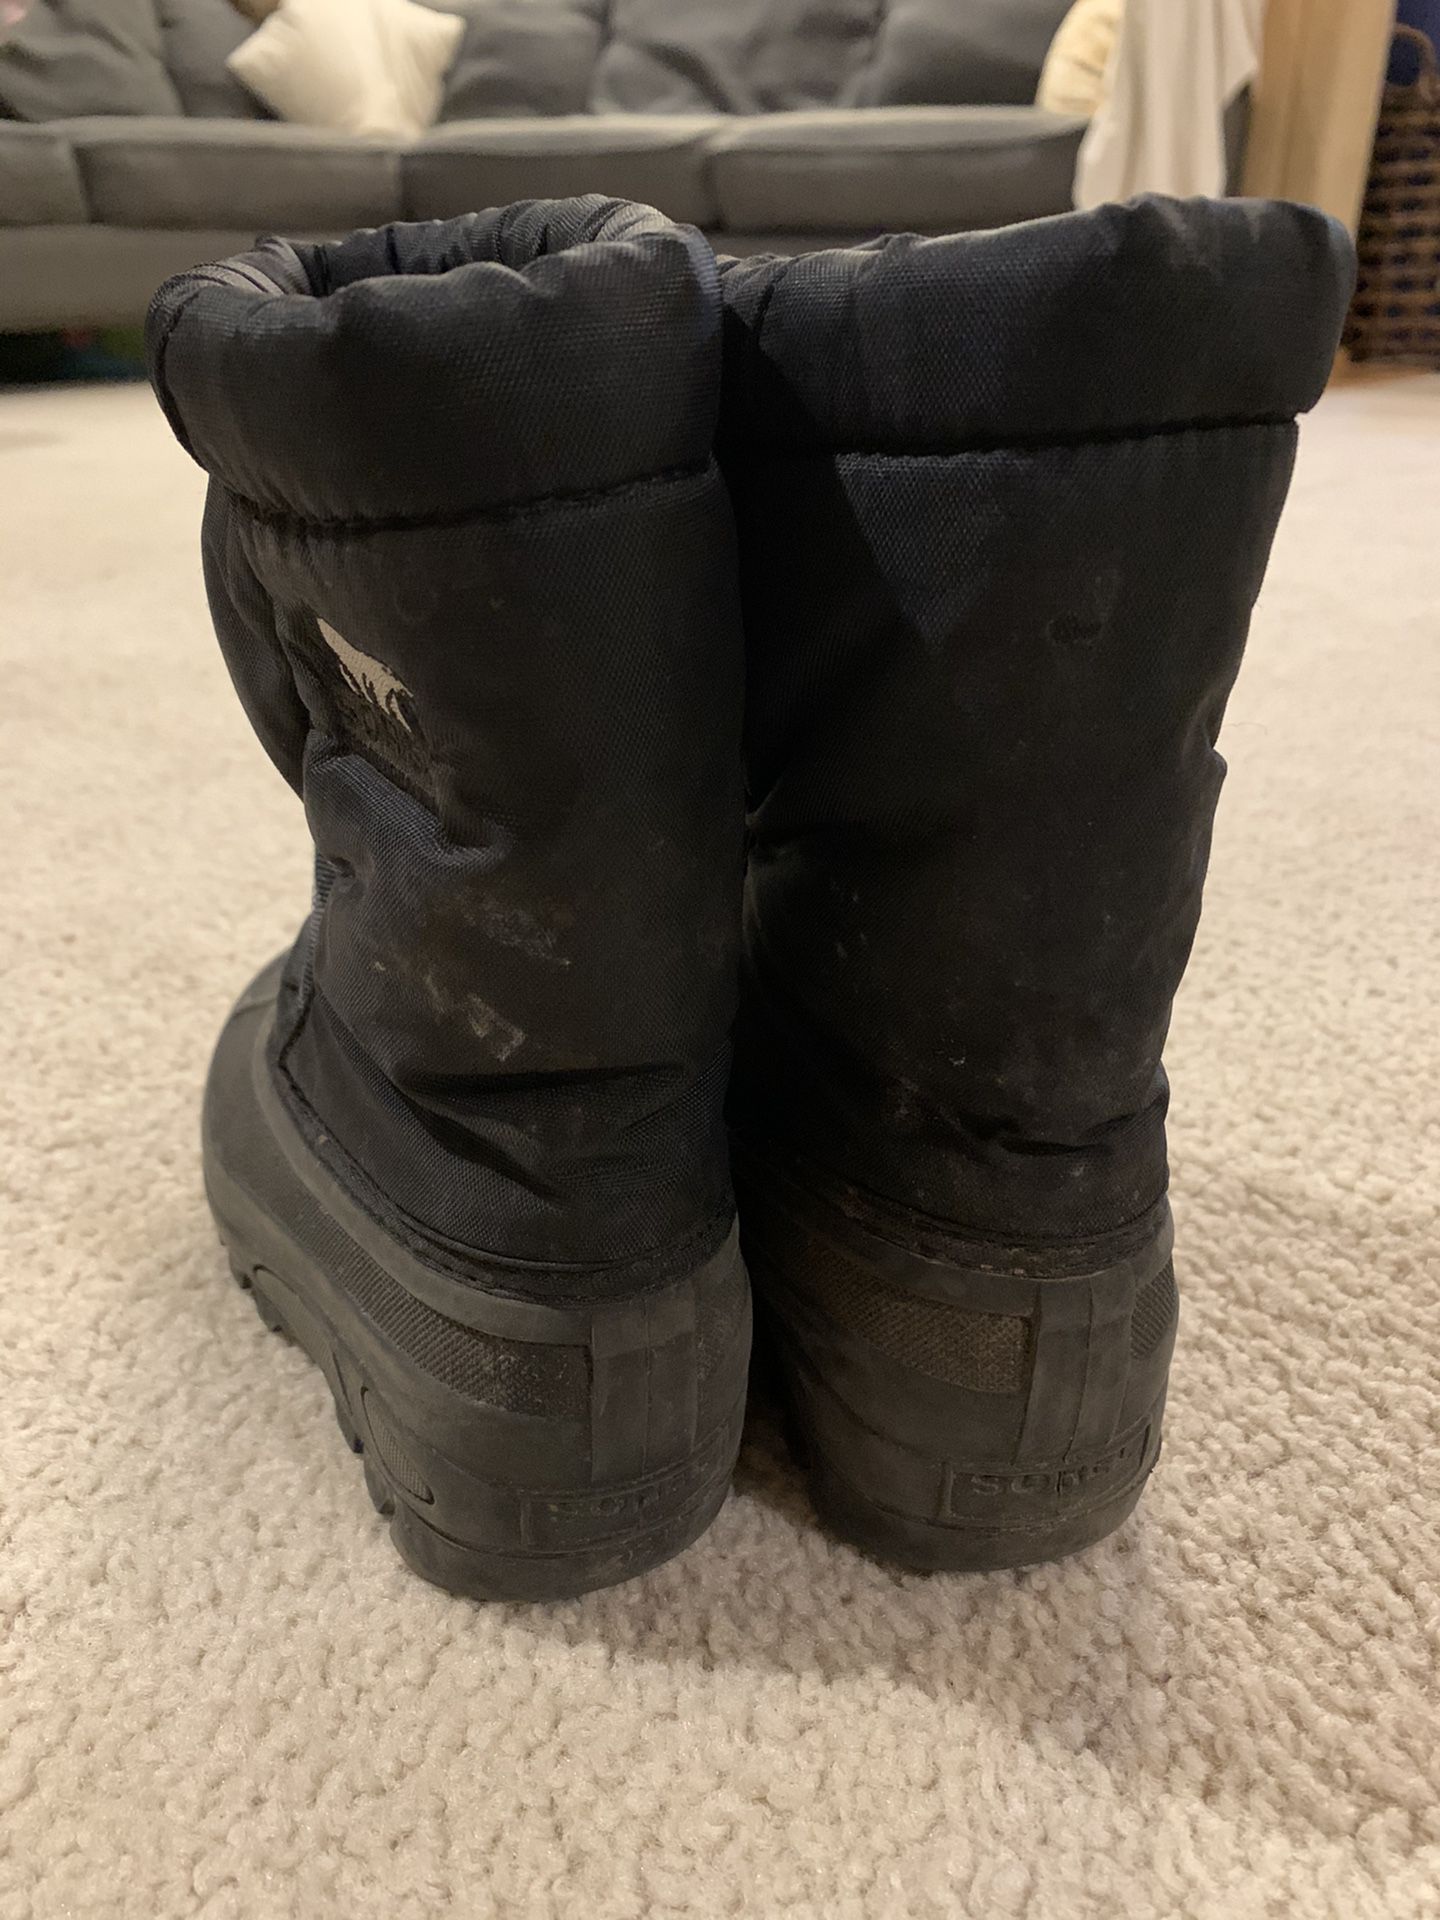 Toddler Sorel Snow boots